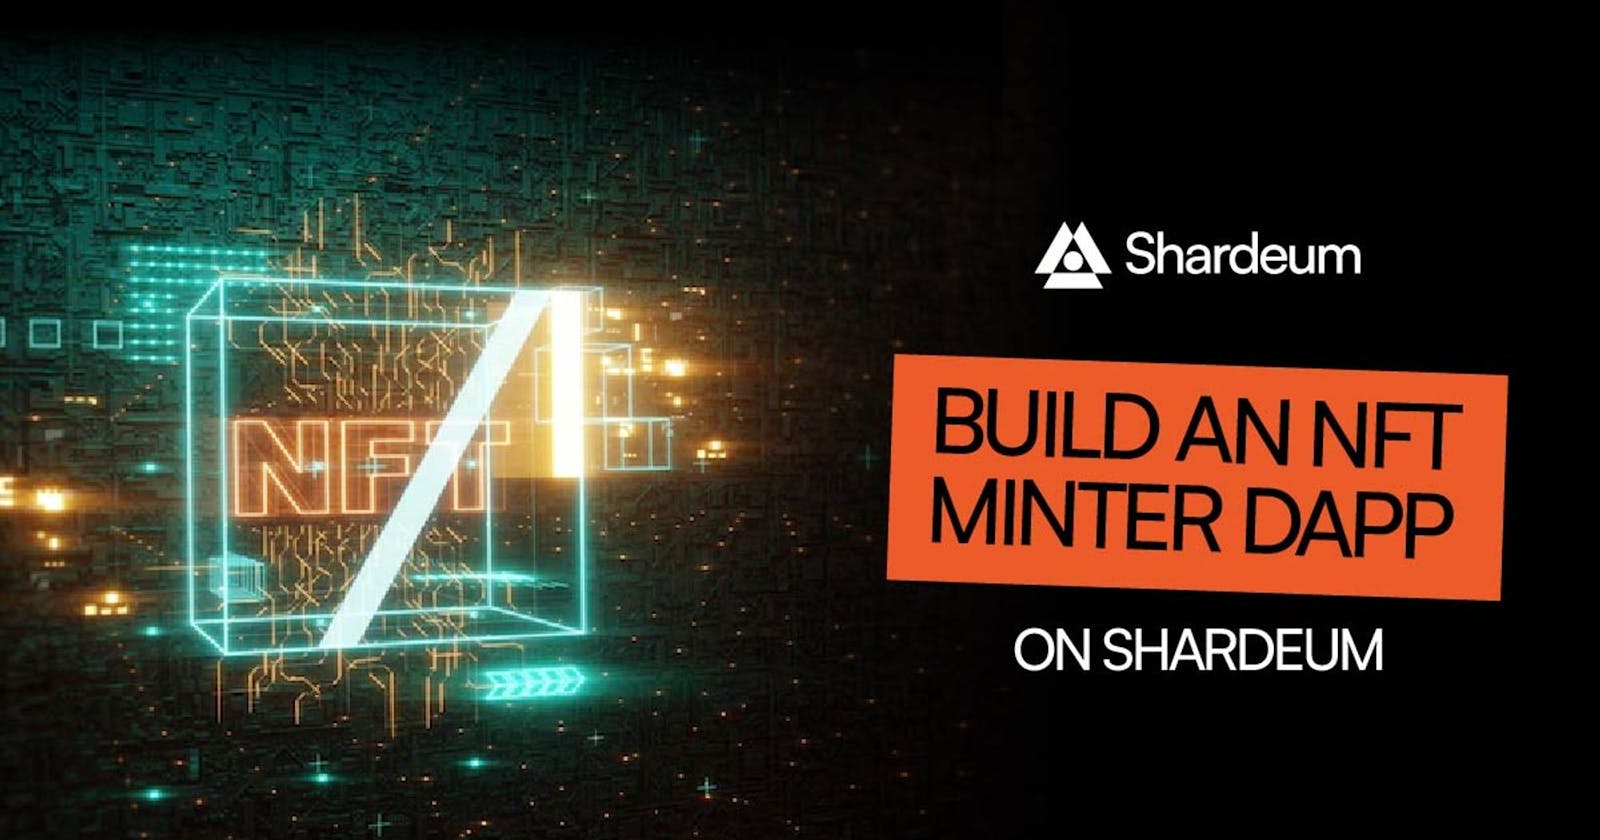 Build an NFT Minter Dapp on Shardeum